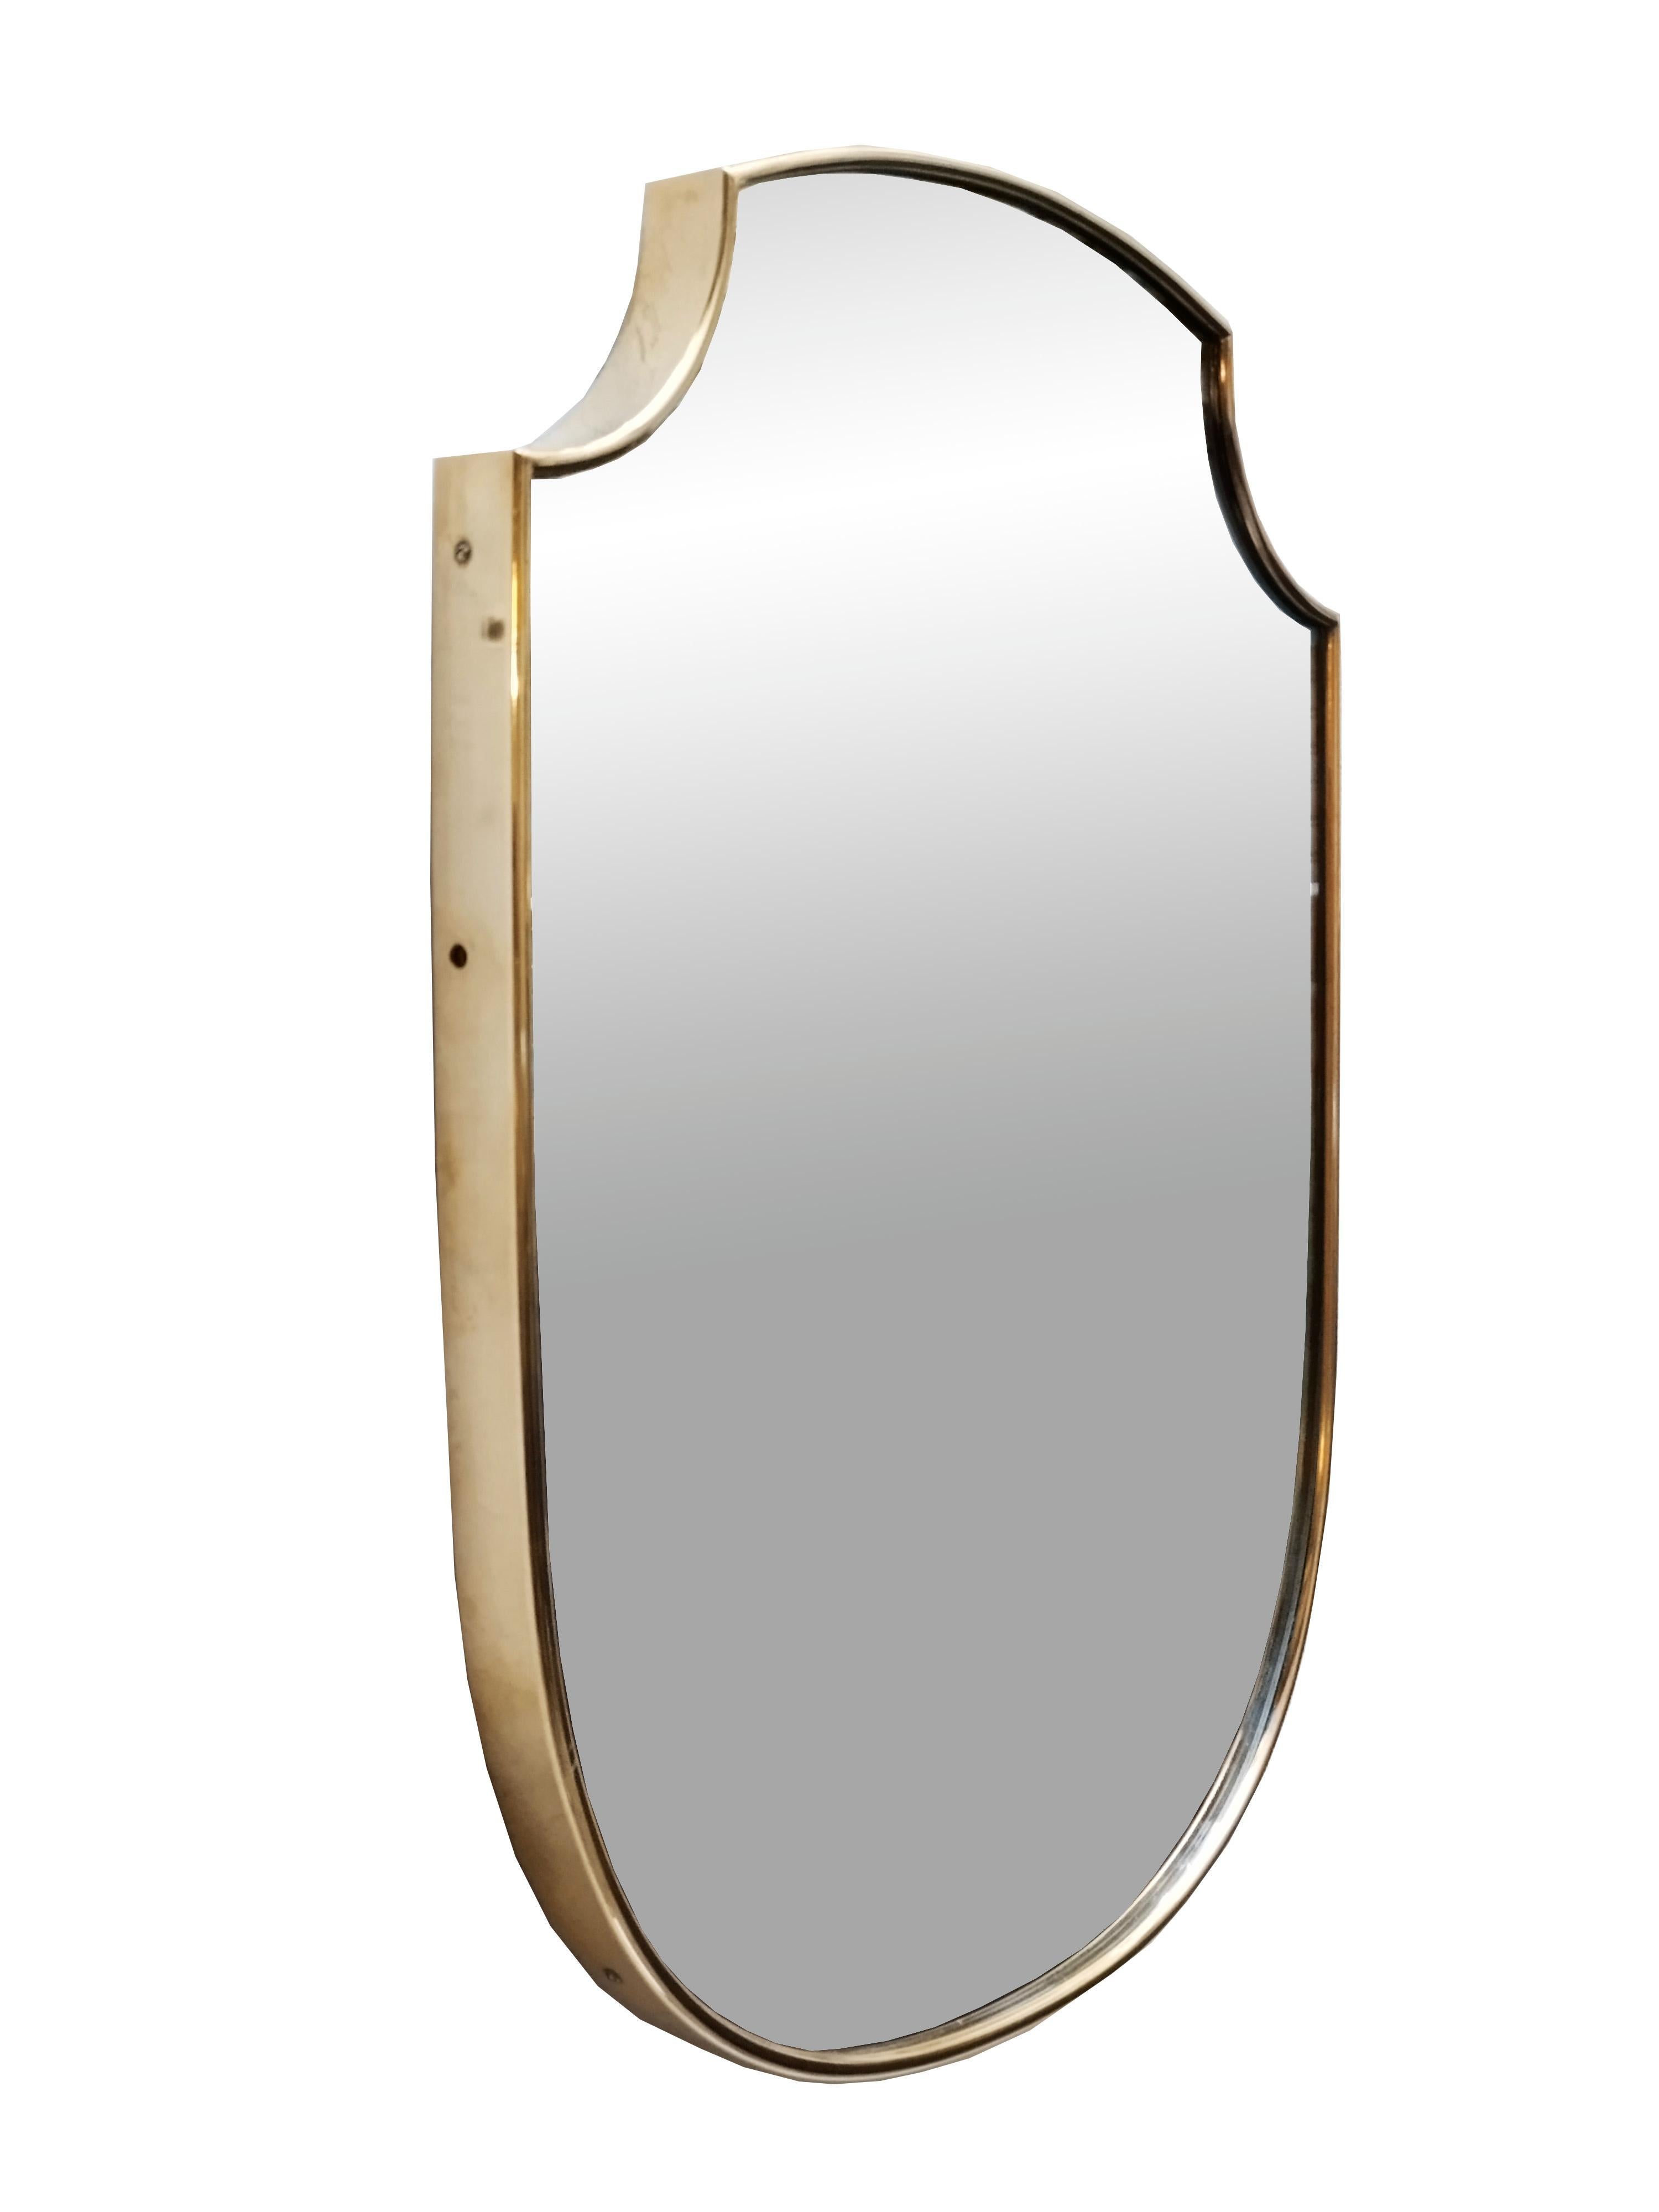 original mirror shield